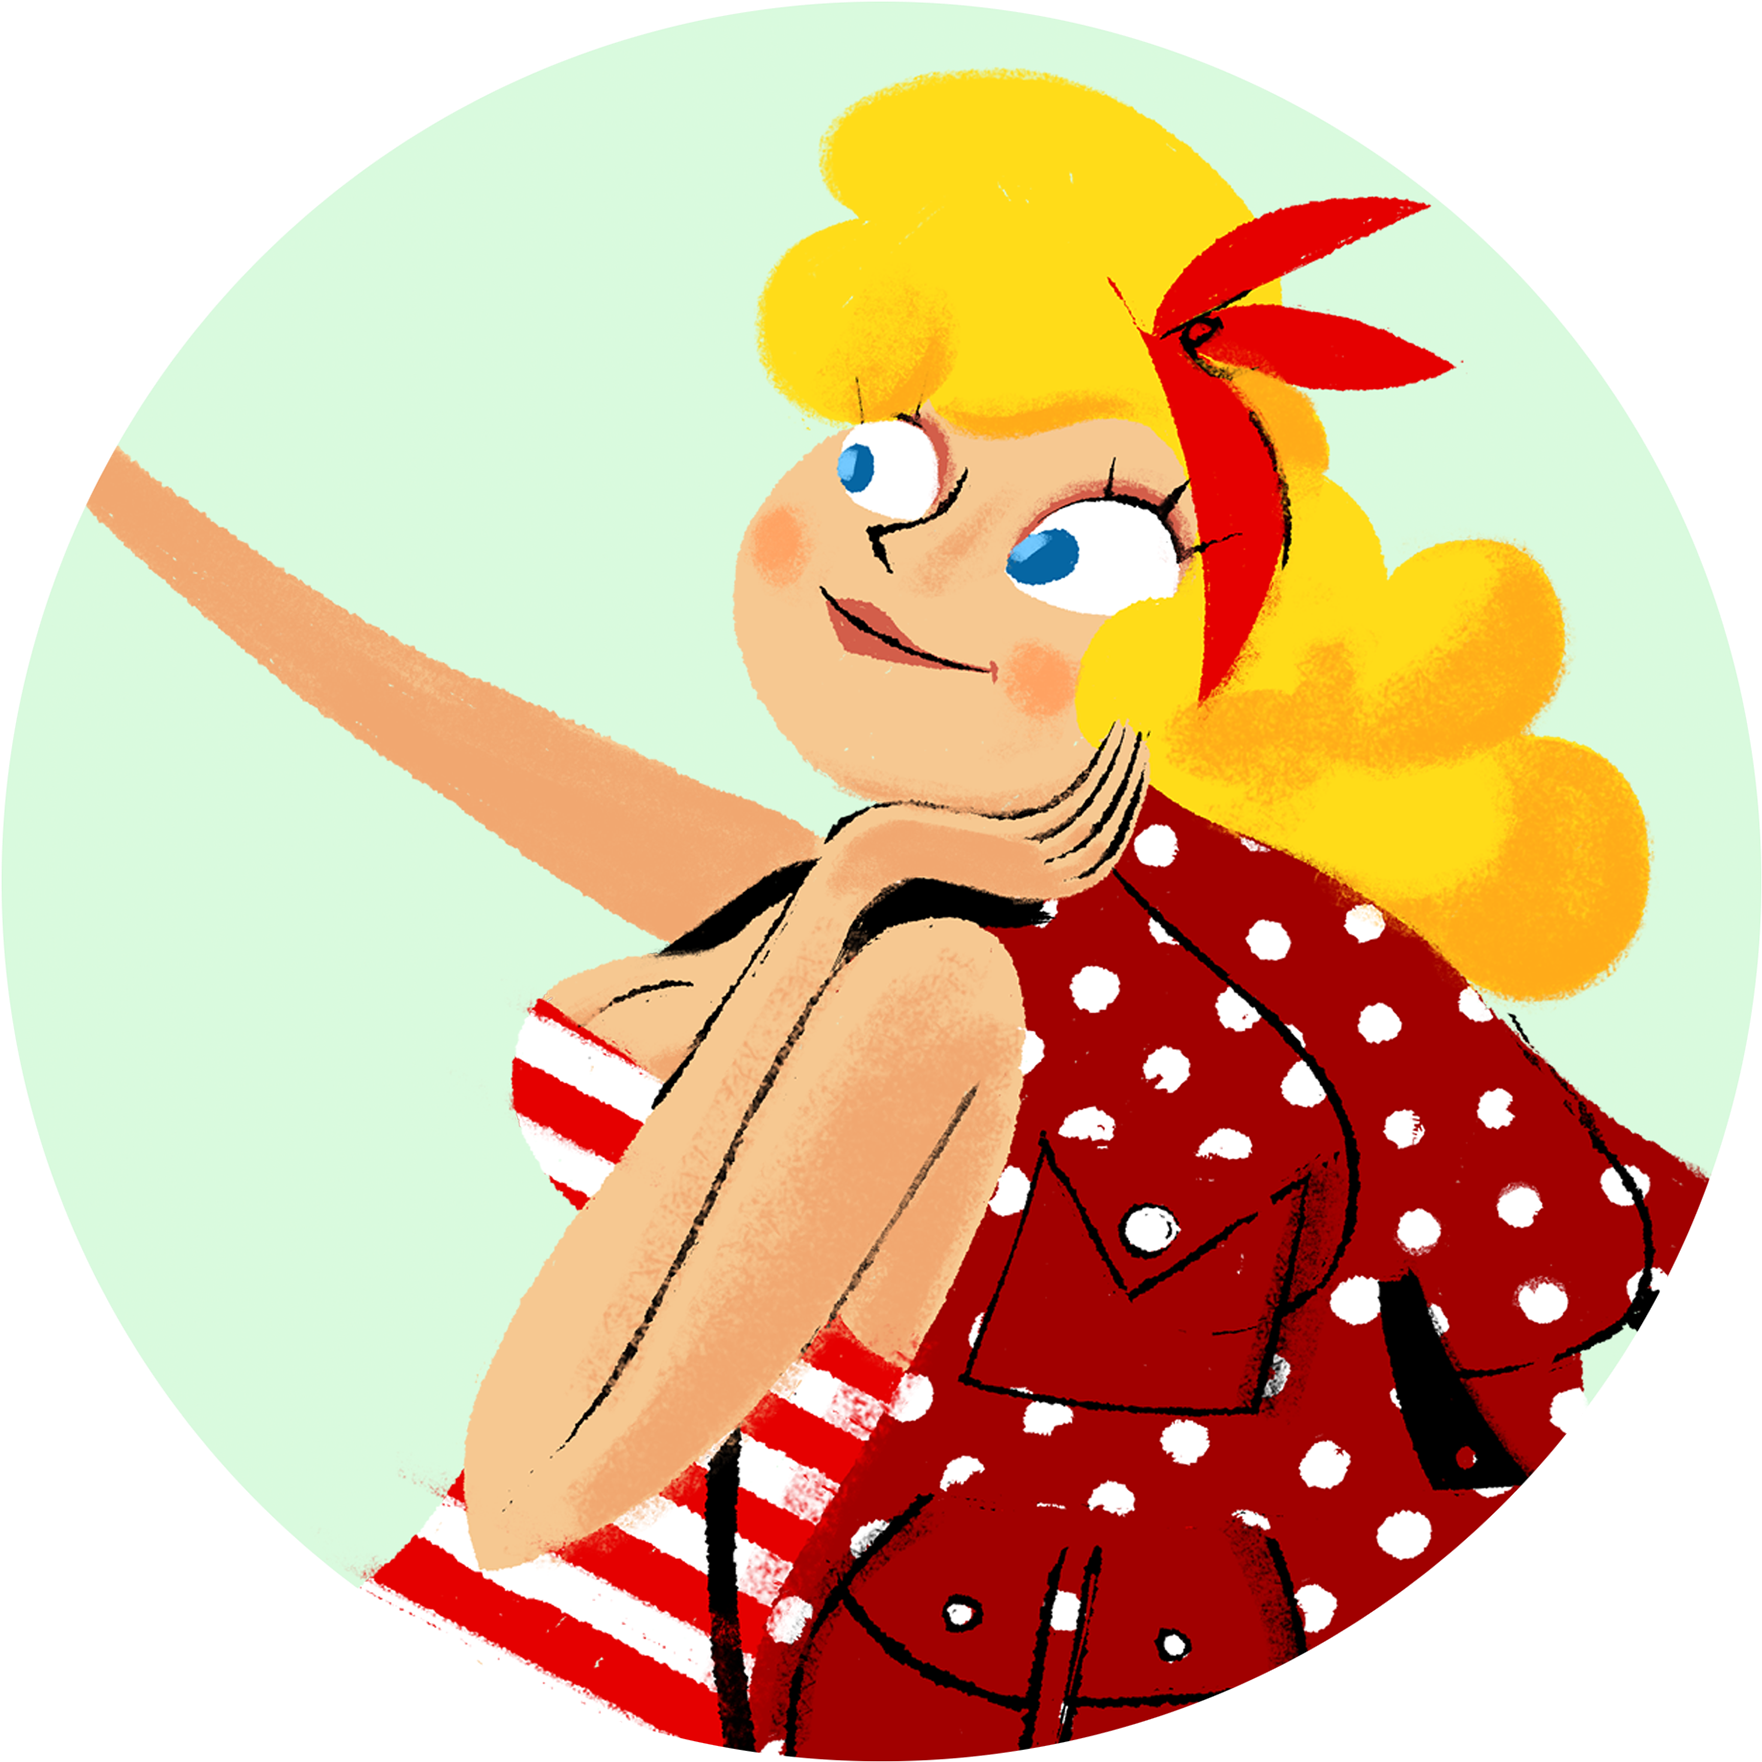 Retro Styled Animated Girl Illustration PNG image